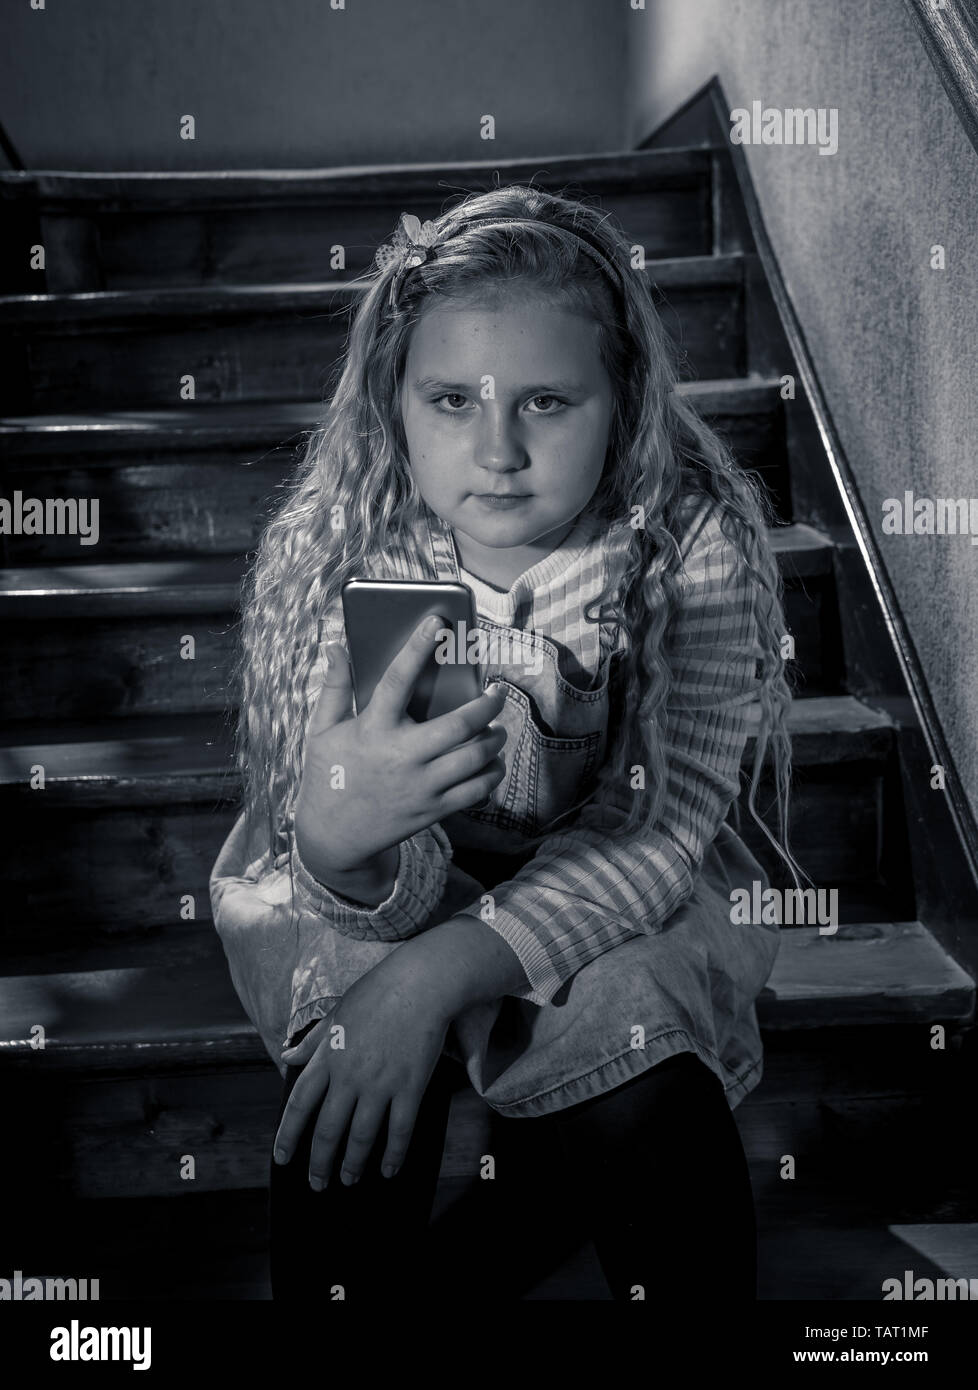 Déprimé triste jeune fille victime de cyberintimidation par smart mobile phone sitting on stairs vous sentir seul, malheureux, sans espoir et d'abus. Un enfant intimidé Banque D'Images